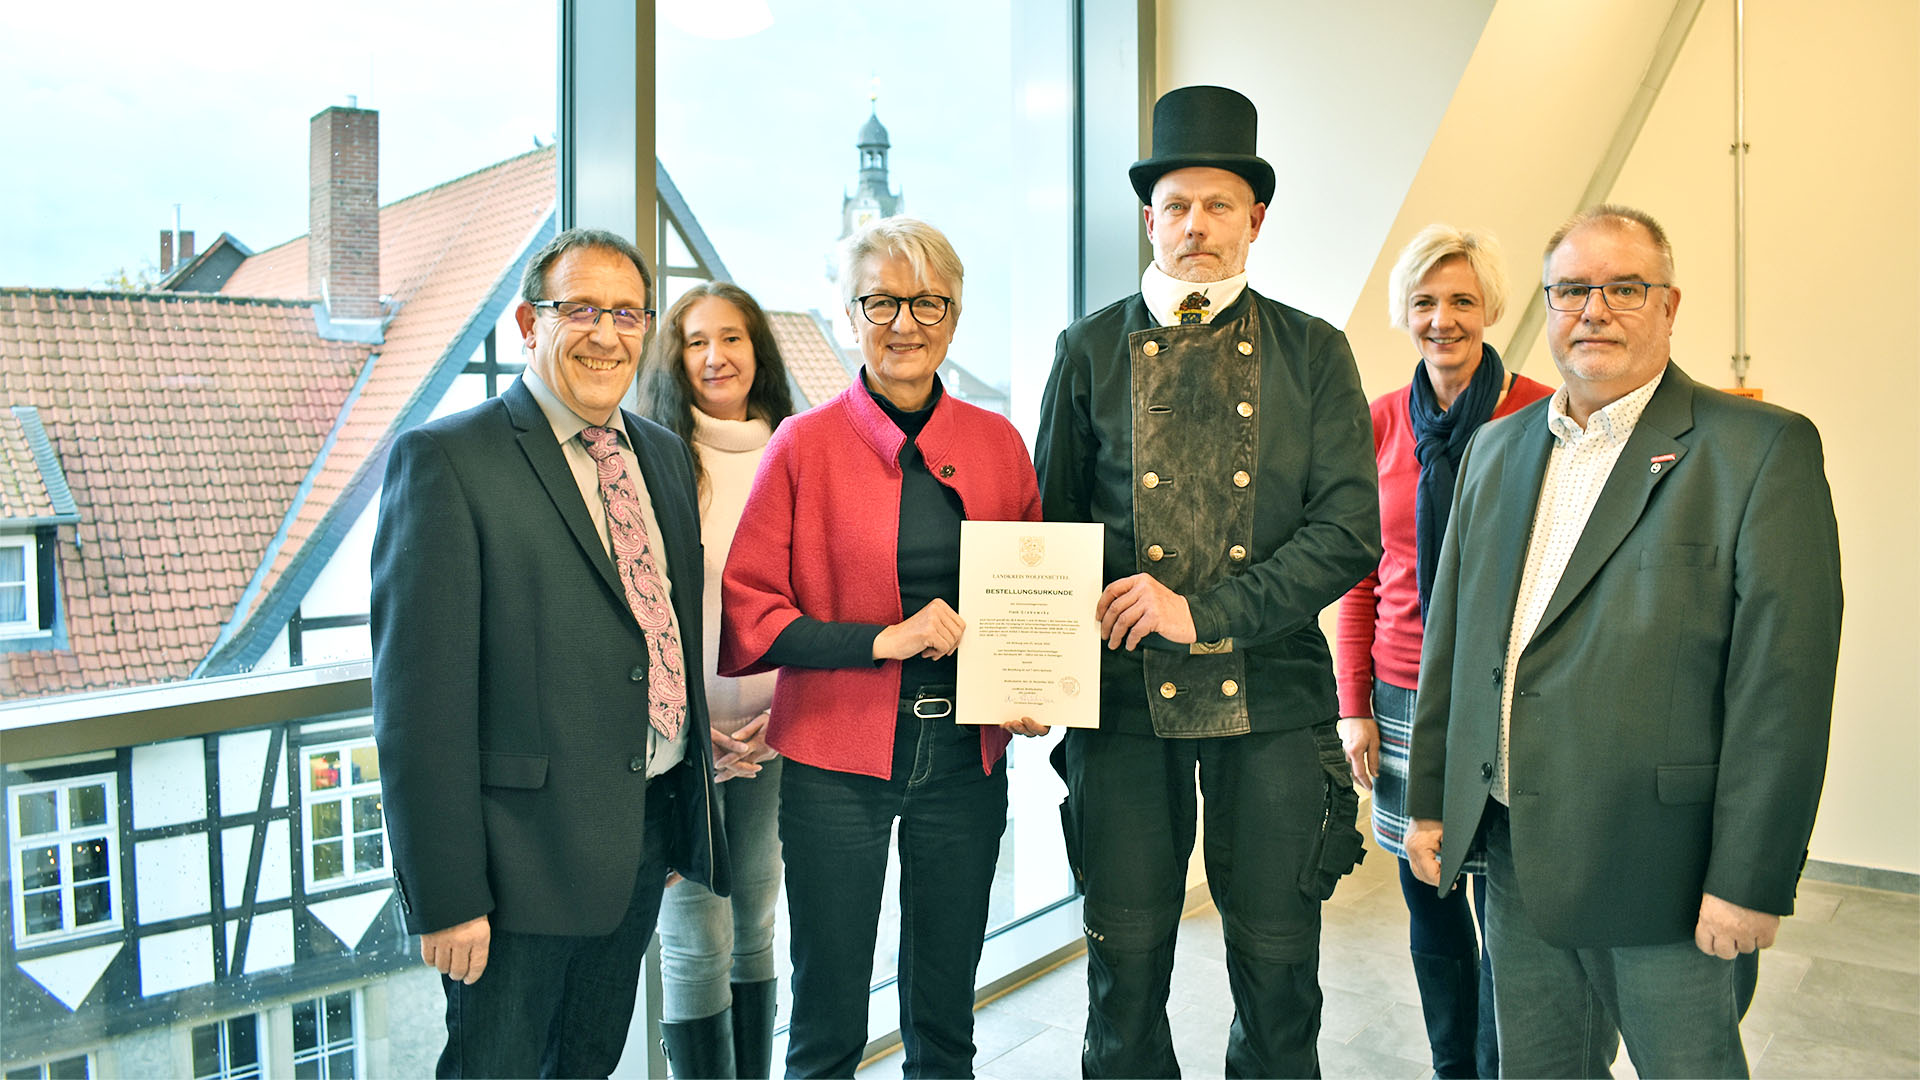 Gruppenfoto mit drei Frauen und drei Männern, davon einer in Schornsteinfeger-Kleidung. Eine der Frauen überreicht dem Schornsteinfeger eine Urkunde.